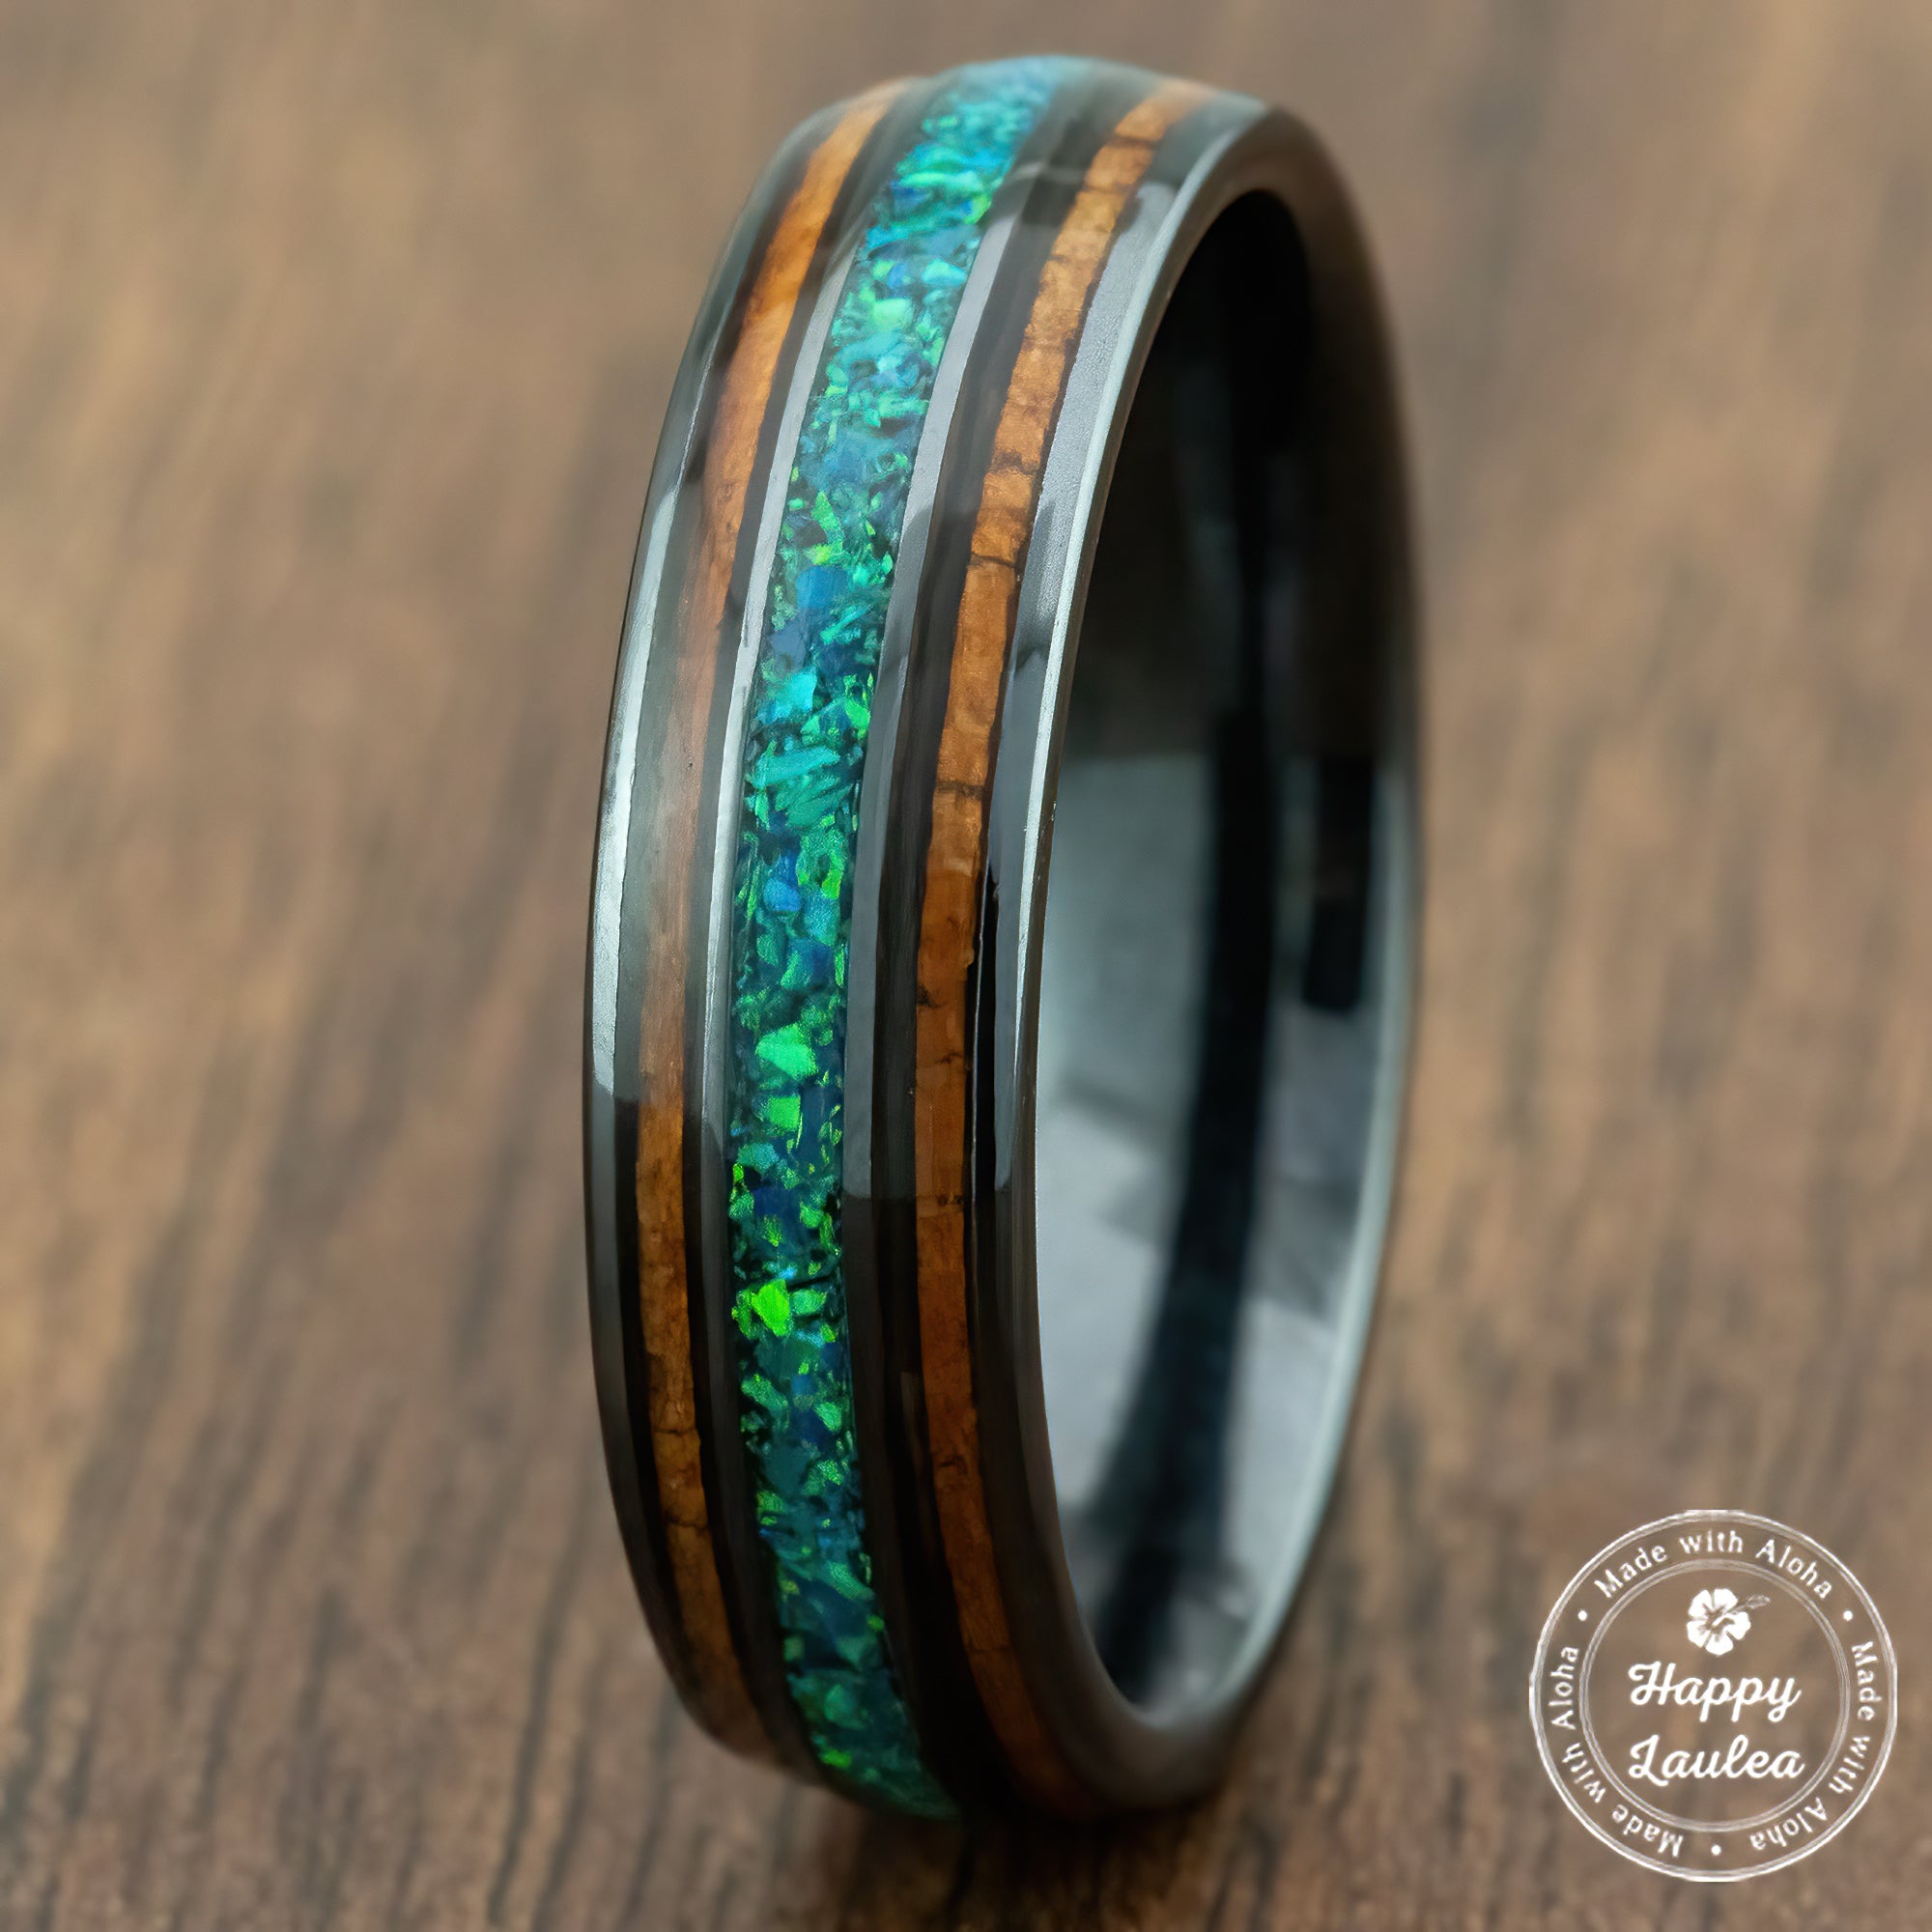 HI-TECH Black Ceramic Ring 'The Aina' [6mm width] Green Opal & Hawaiian Koa Wood